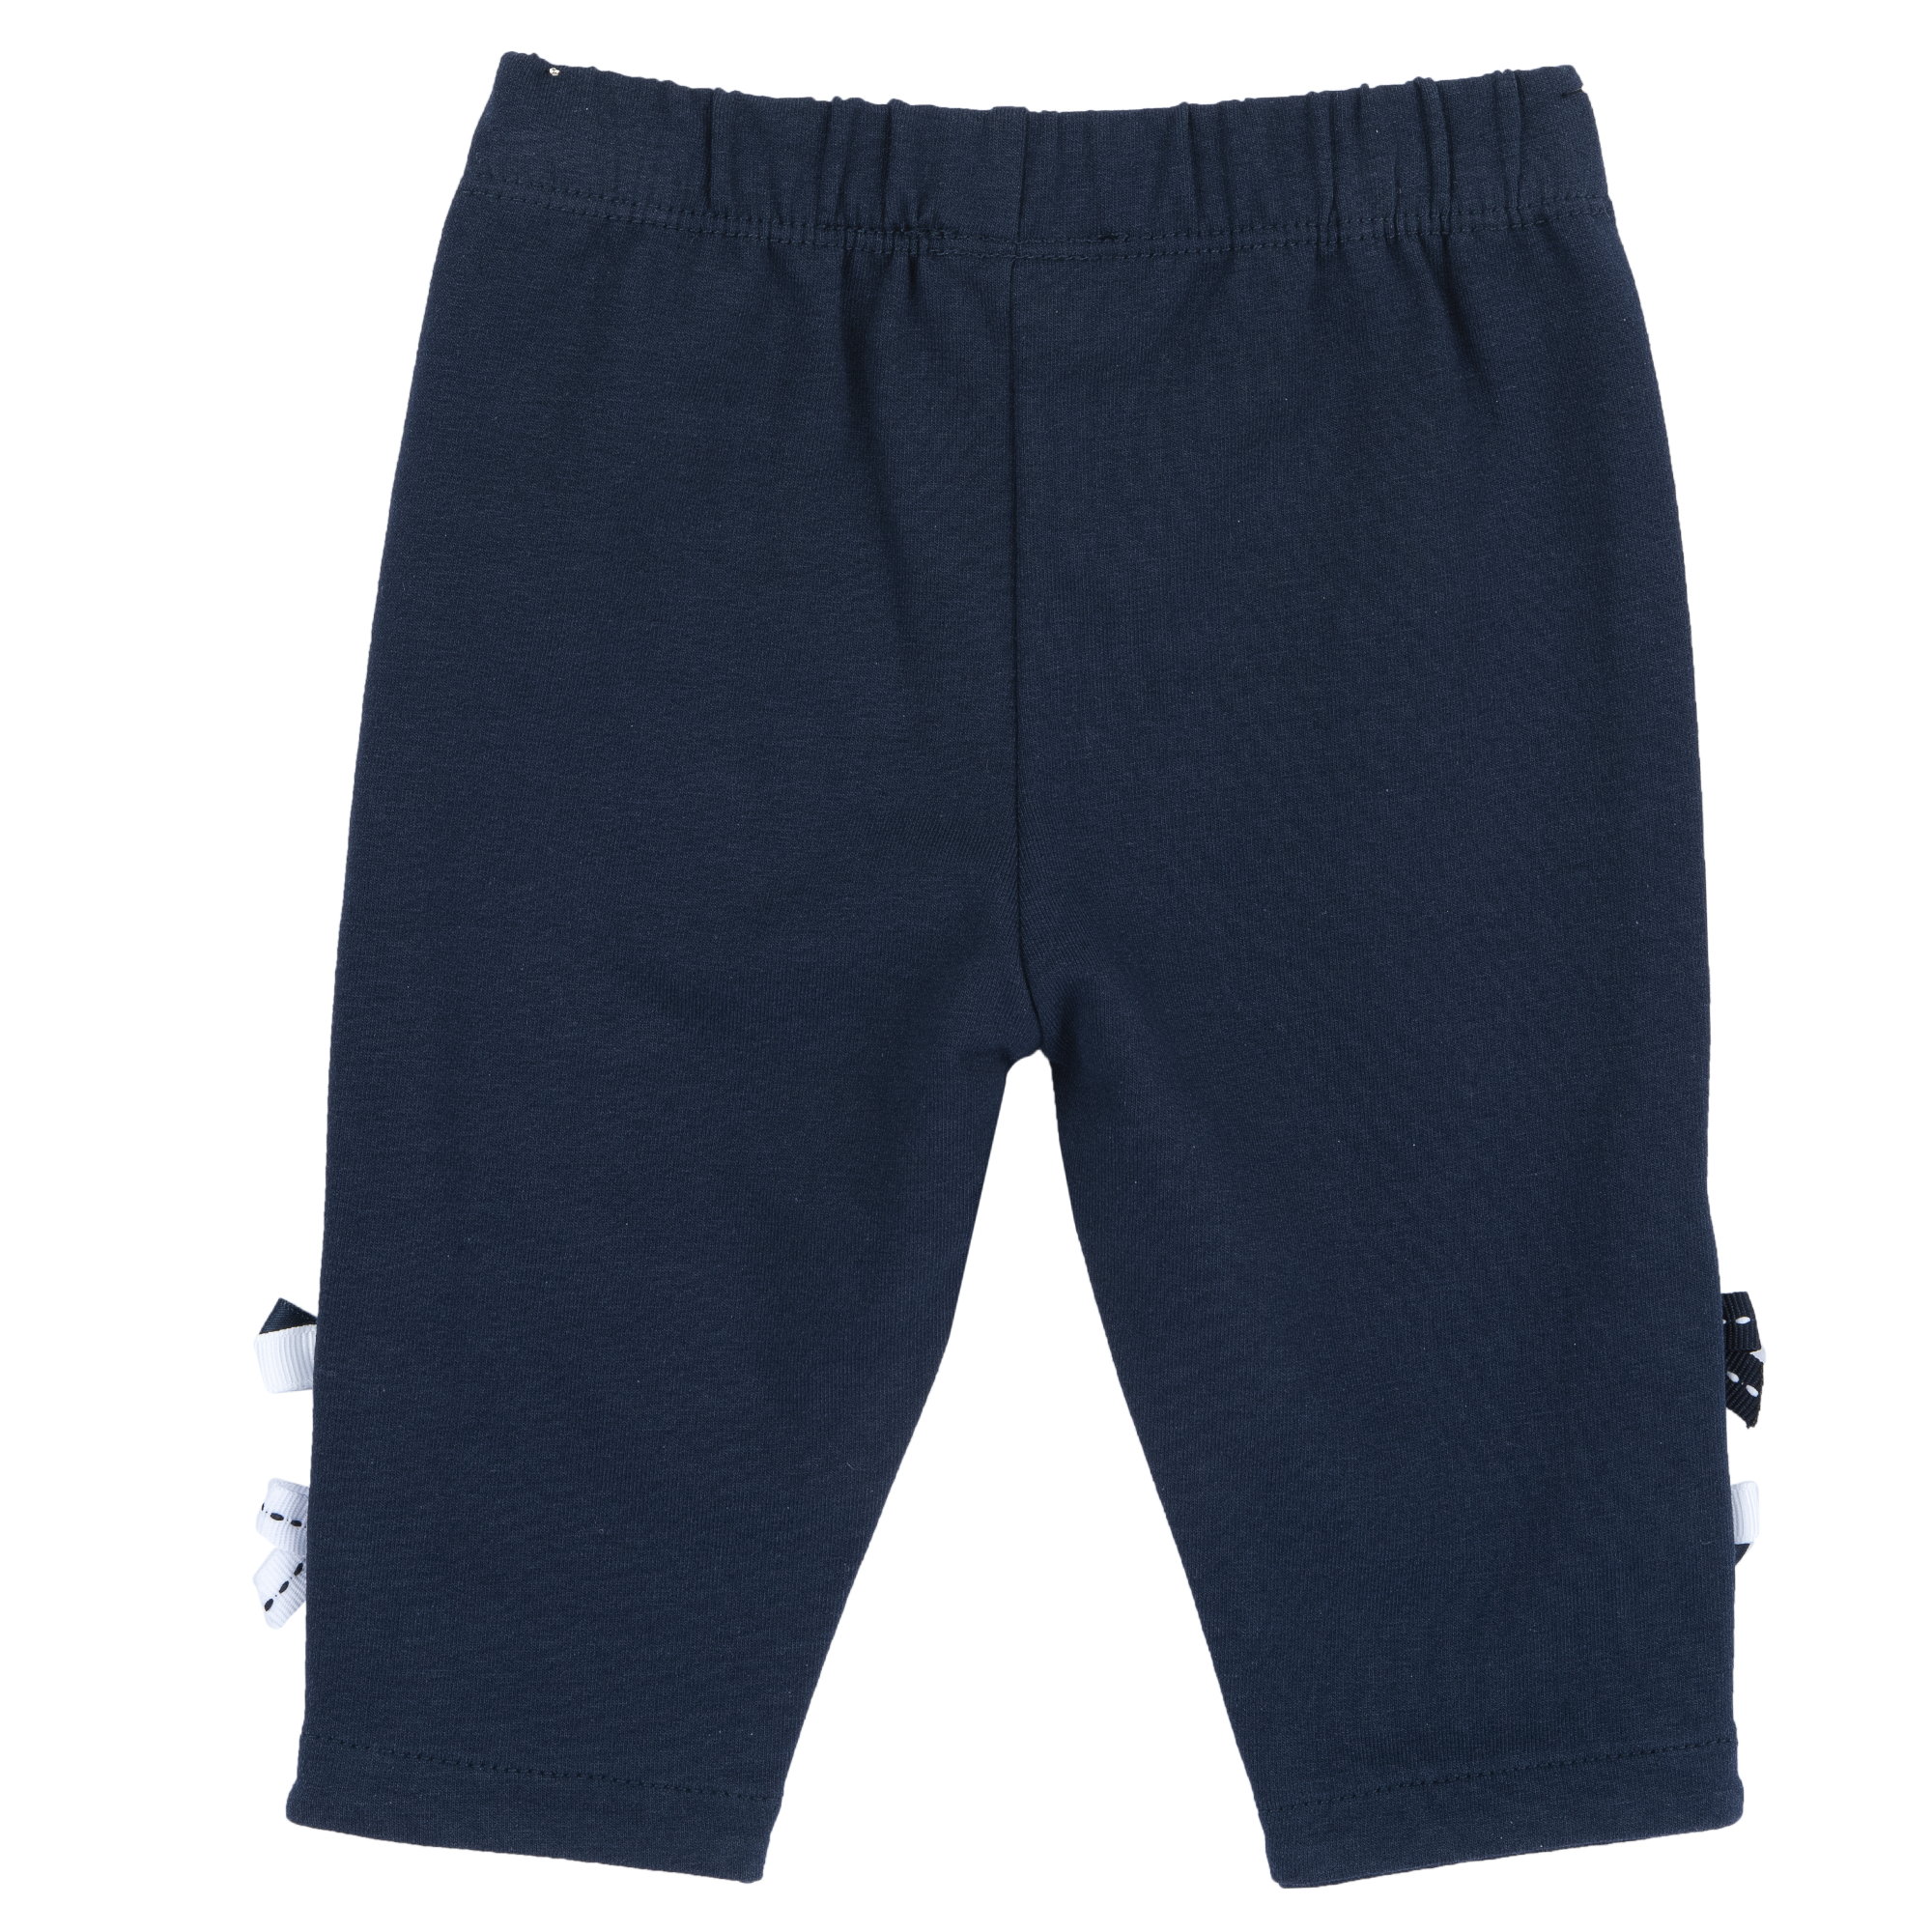 Pantaloni copii Chicco, Albastru Inchis, 08999-66MFCO